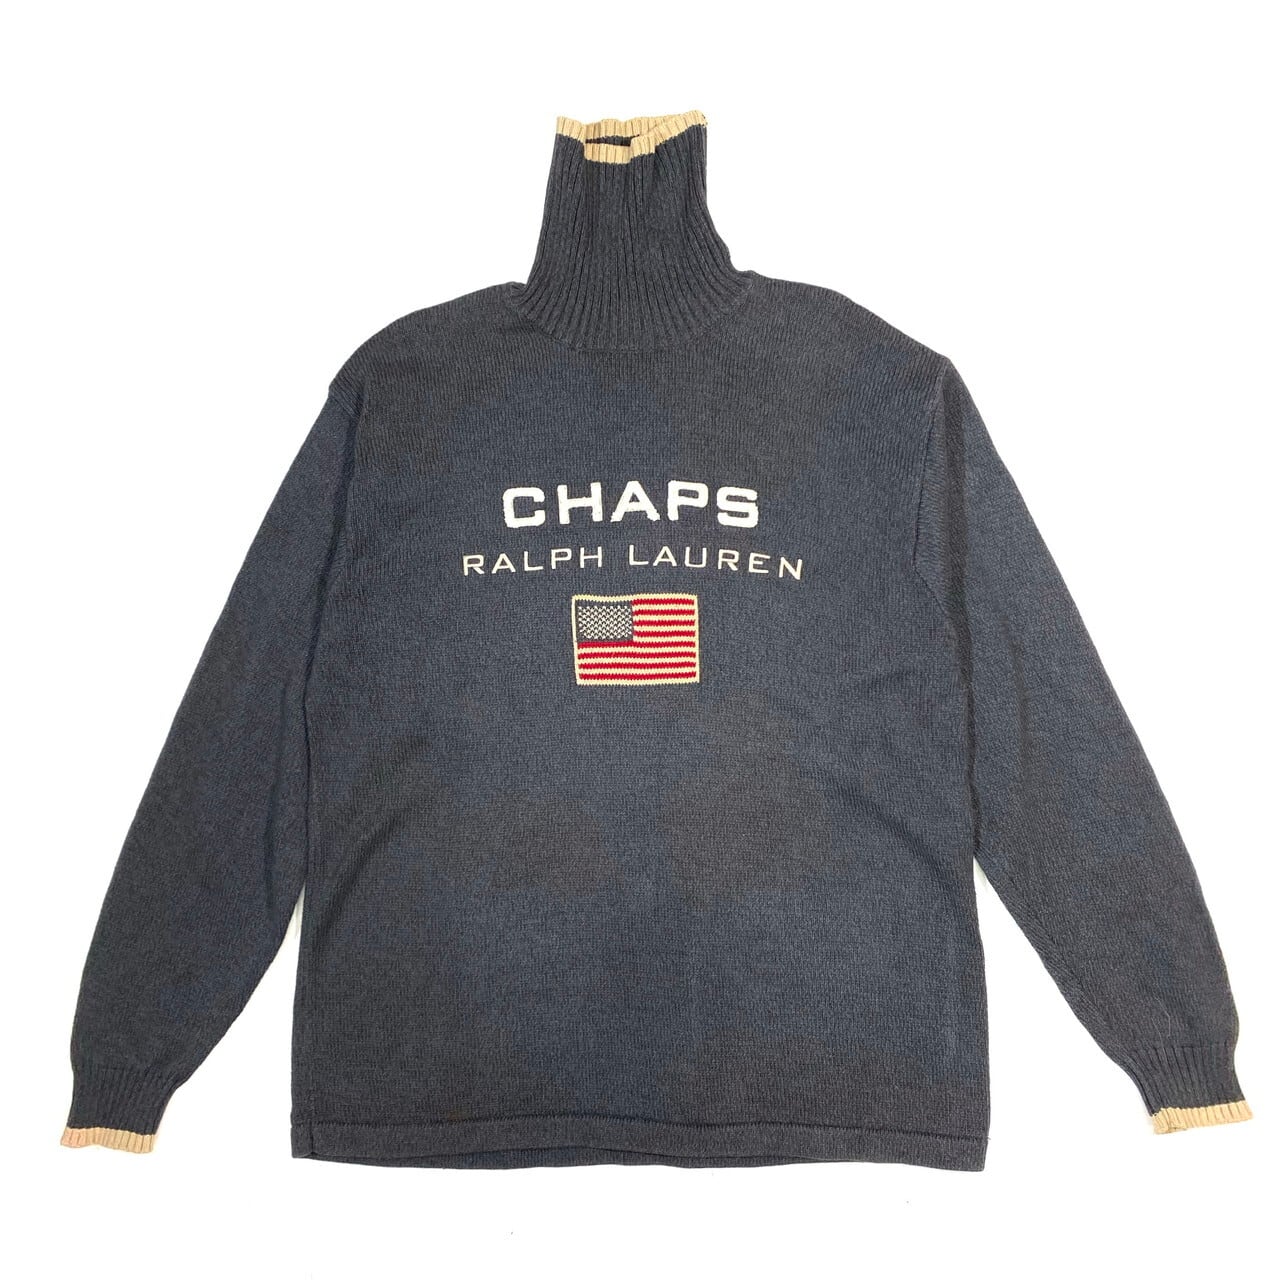 年代 s CHAPS Ralph Lauren チャップス ラルフローレン 星条旗